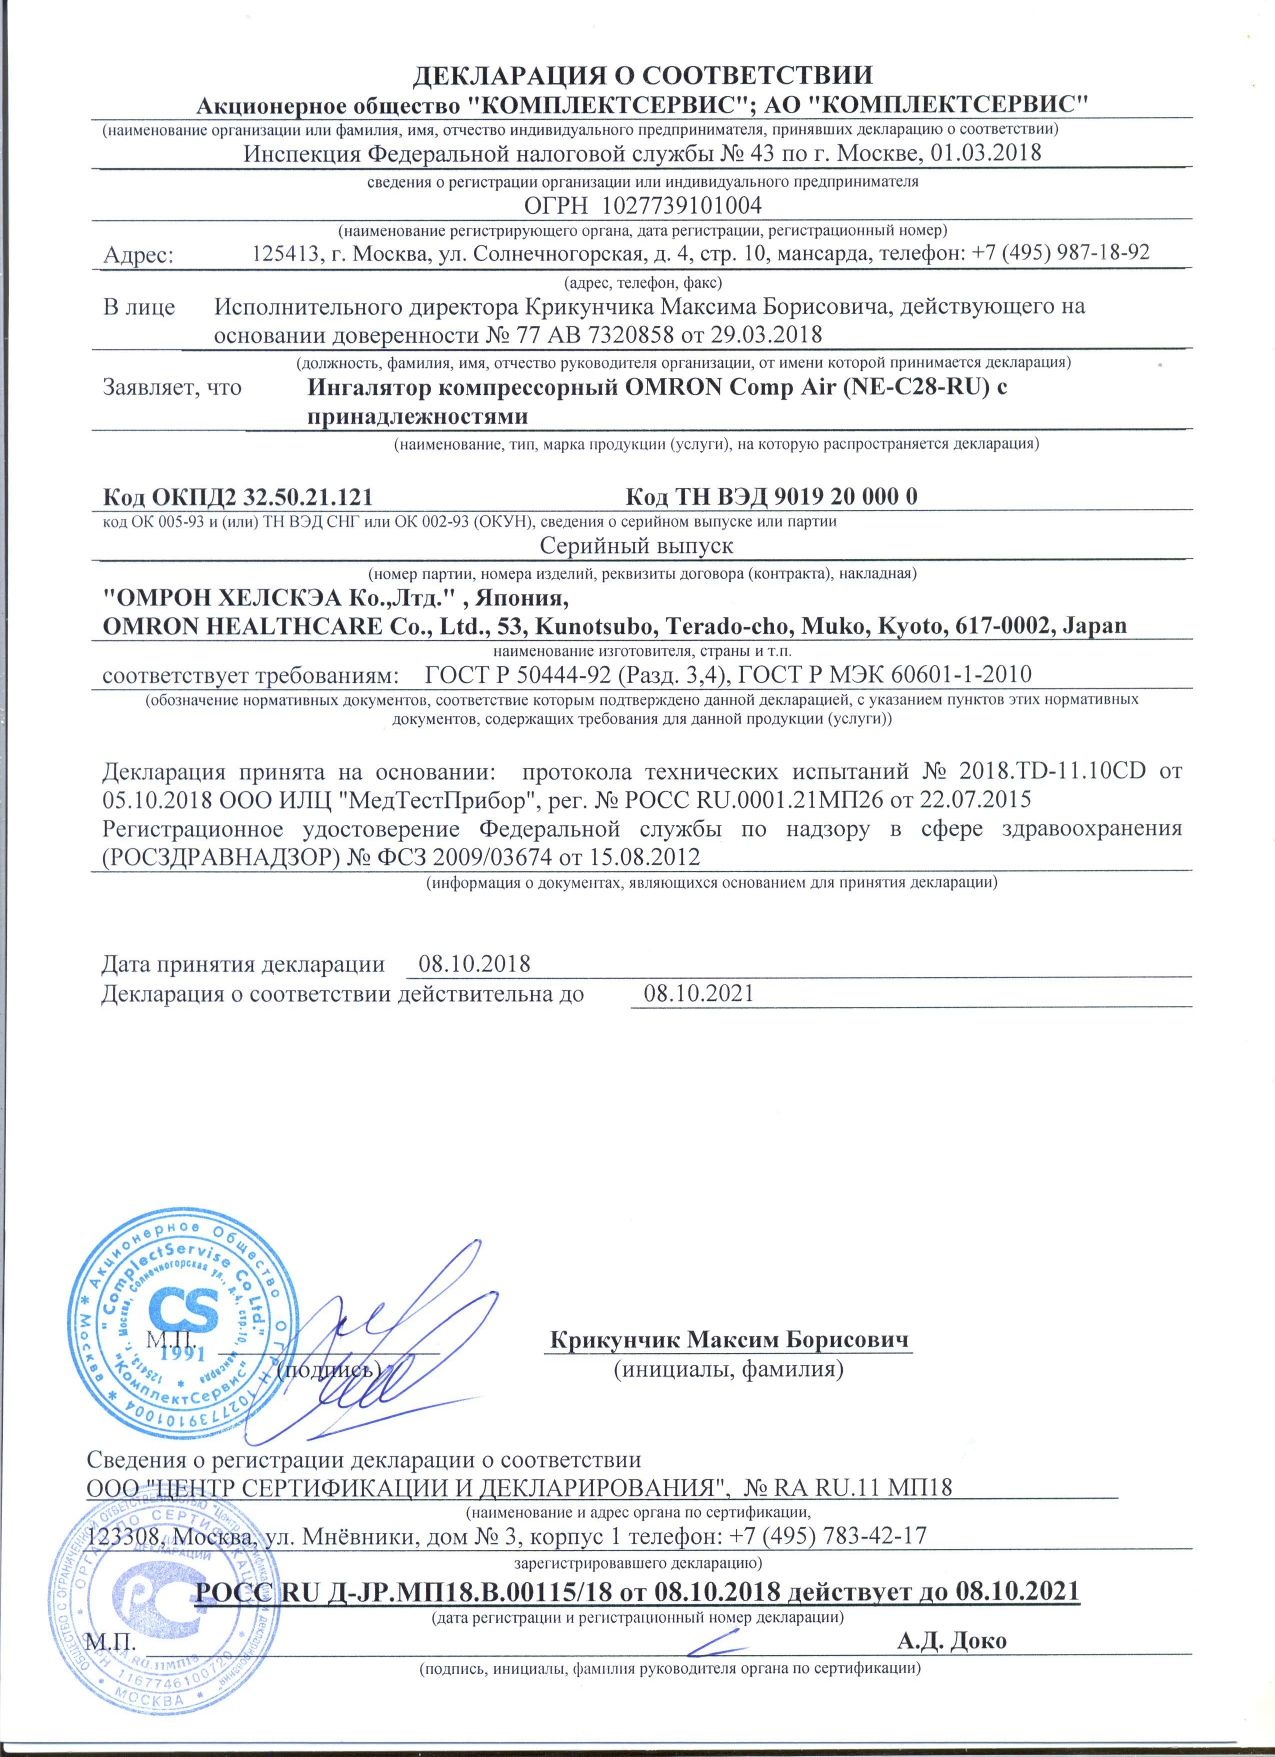 Ингалятор компрессорный OMRON Comp Air (NE-C28-RU) сертификат